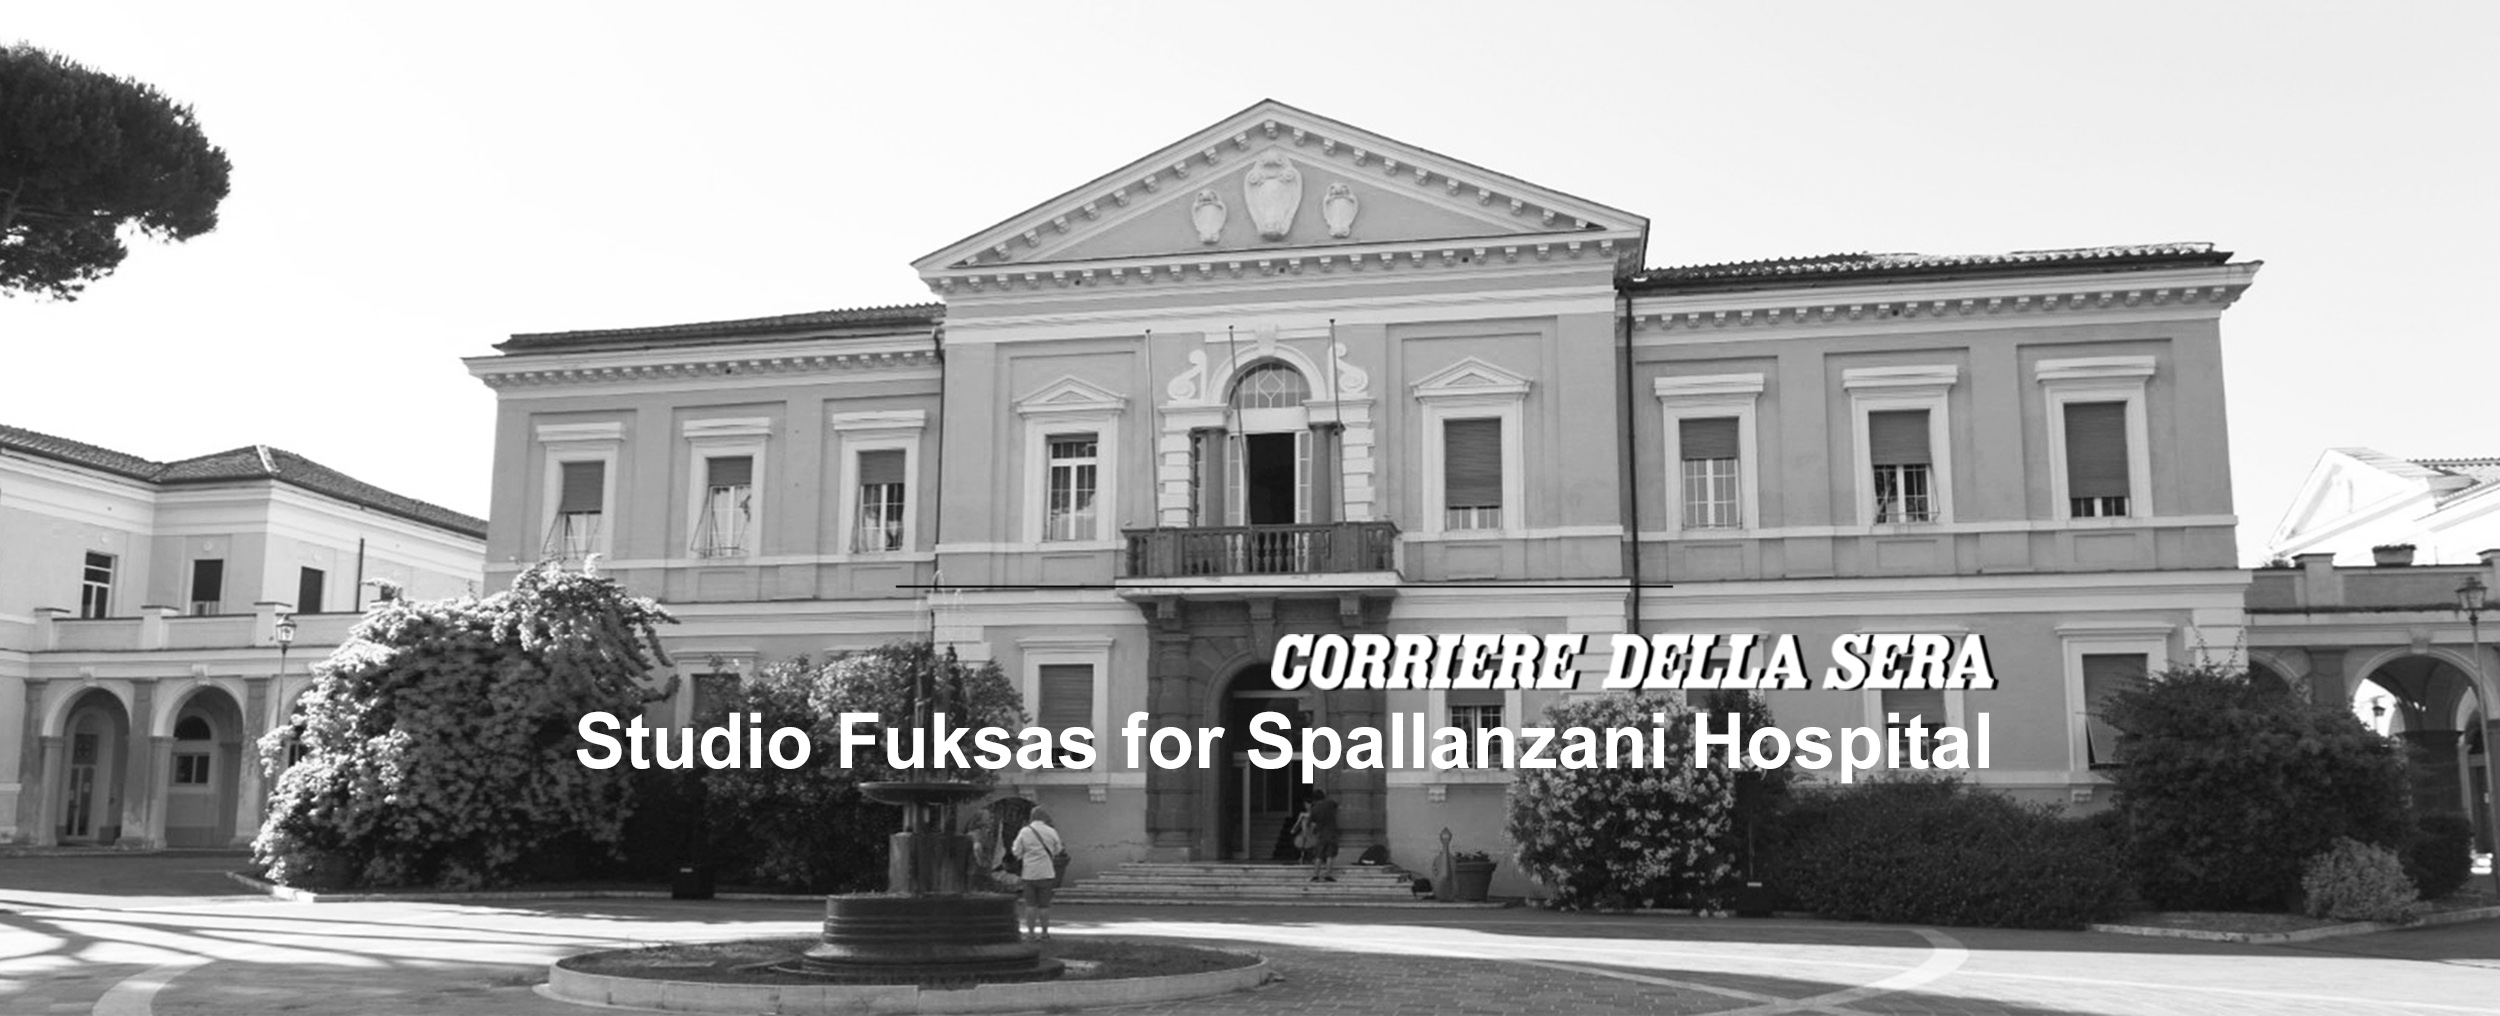 Studio Fuksas will design the entrance to the bio containment center of the Spallanzani Hospital in Rome, article on Corriere della Sera2020, May 05